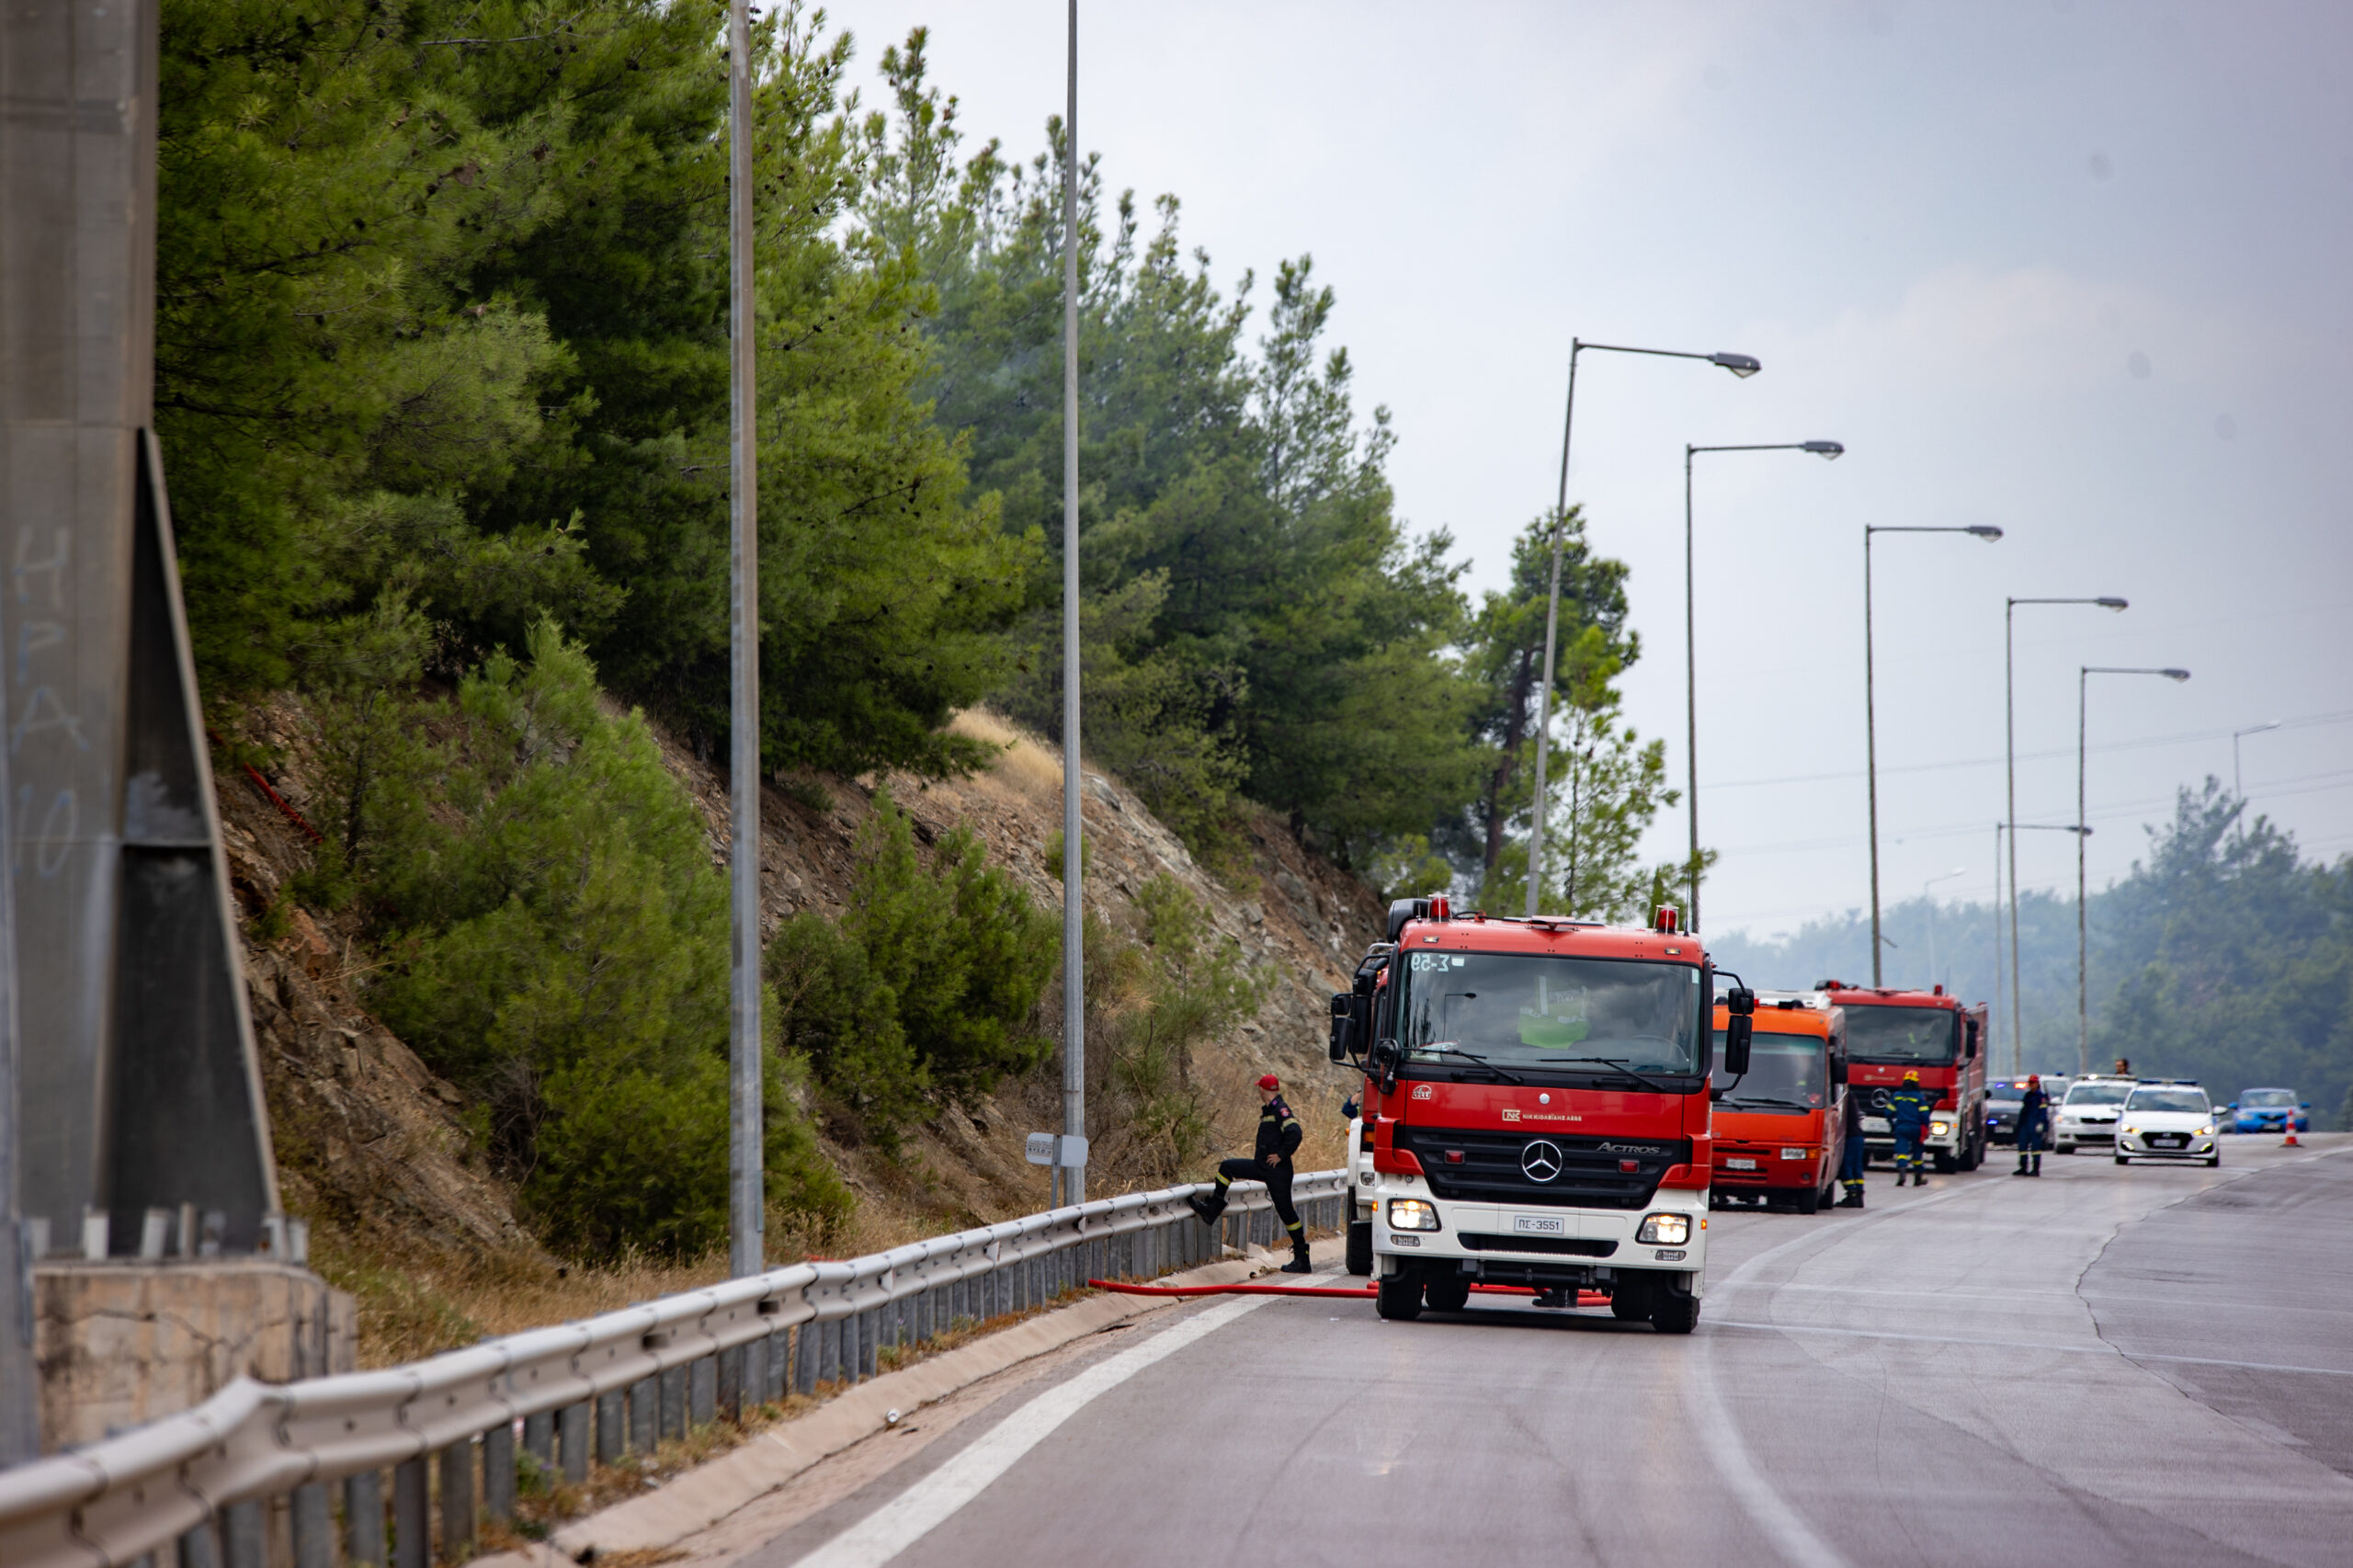 Απαγόρευση κυκλοφορίας αύριο σε περιοχές της Θεσσαλονίκης λόγω υψηλού κινδύνου πυρκαγιάς